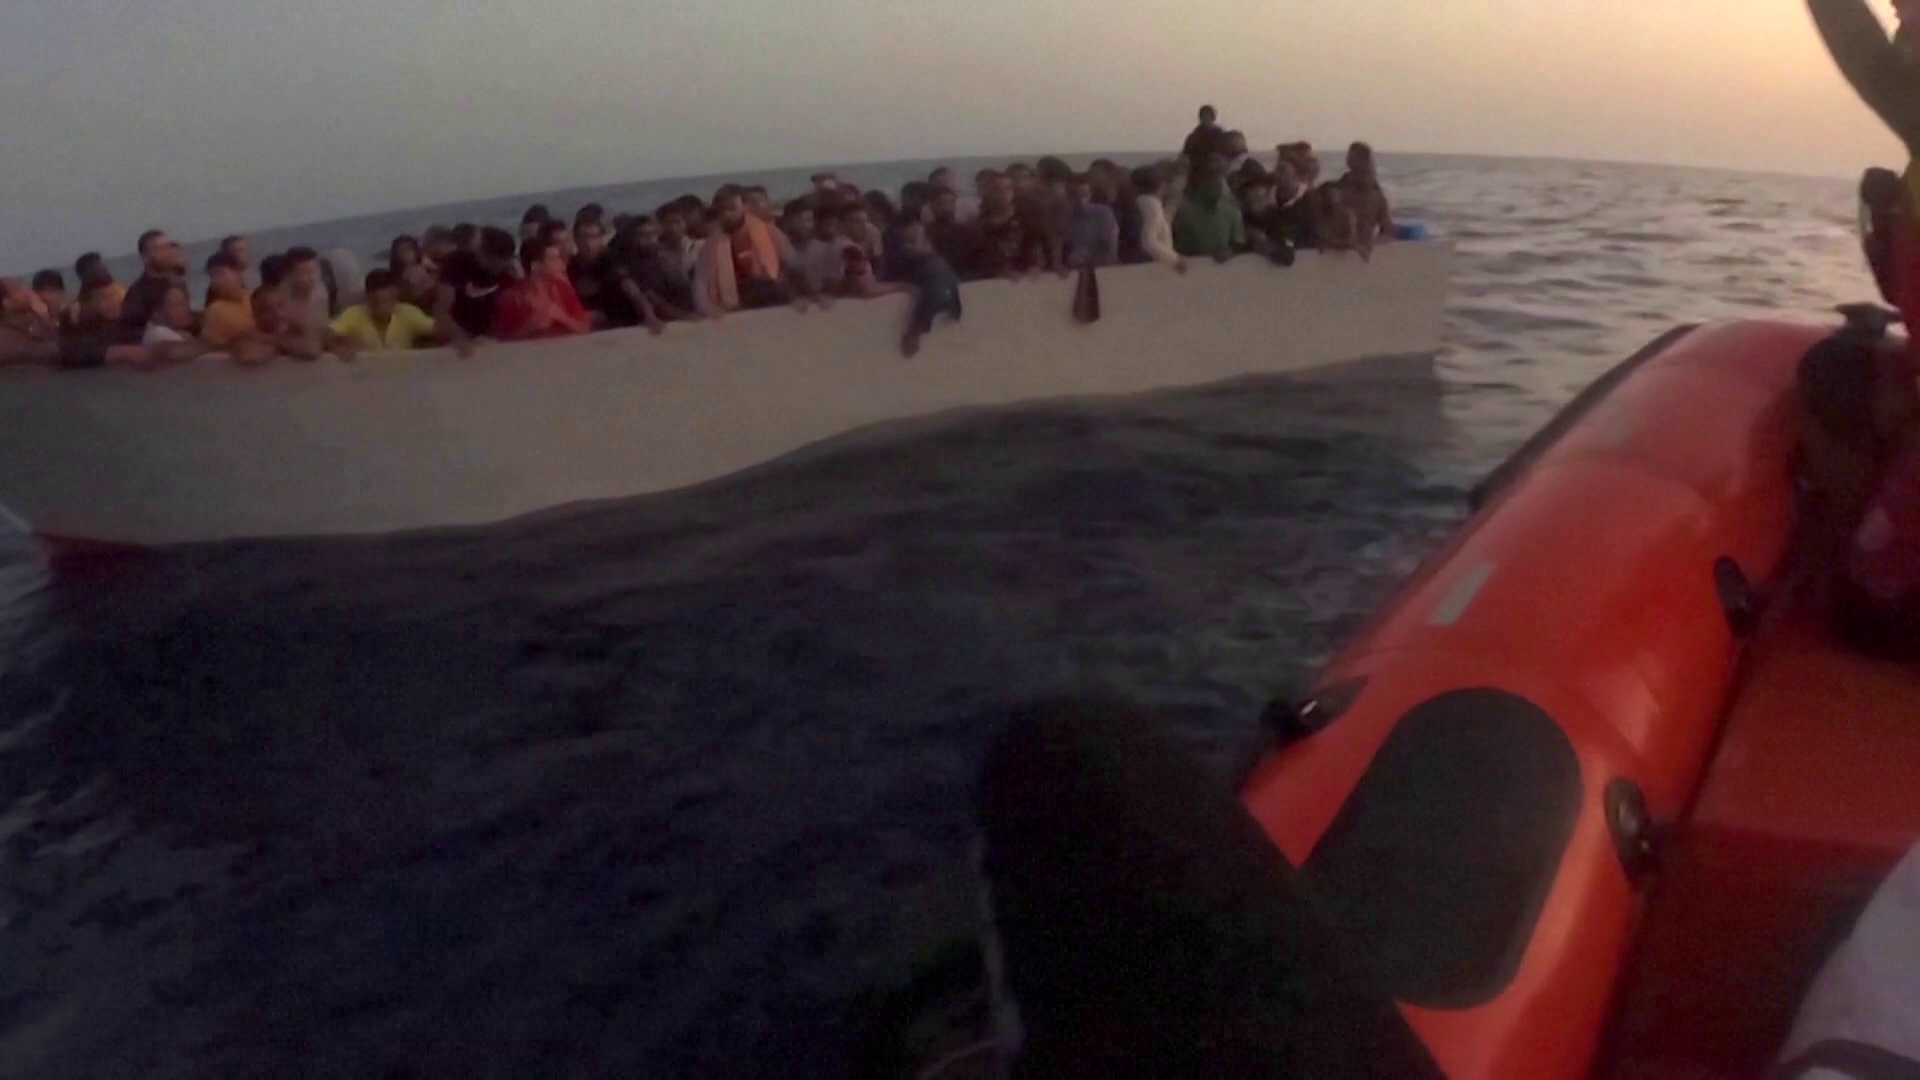 Kikötési engedélyt kér Brüsszel a migránshajóknak Olaszországtól